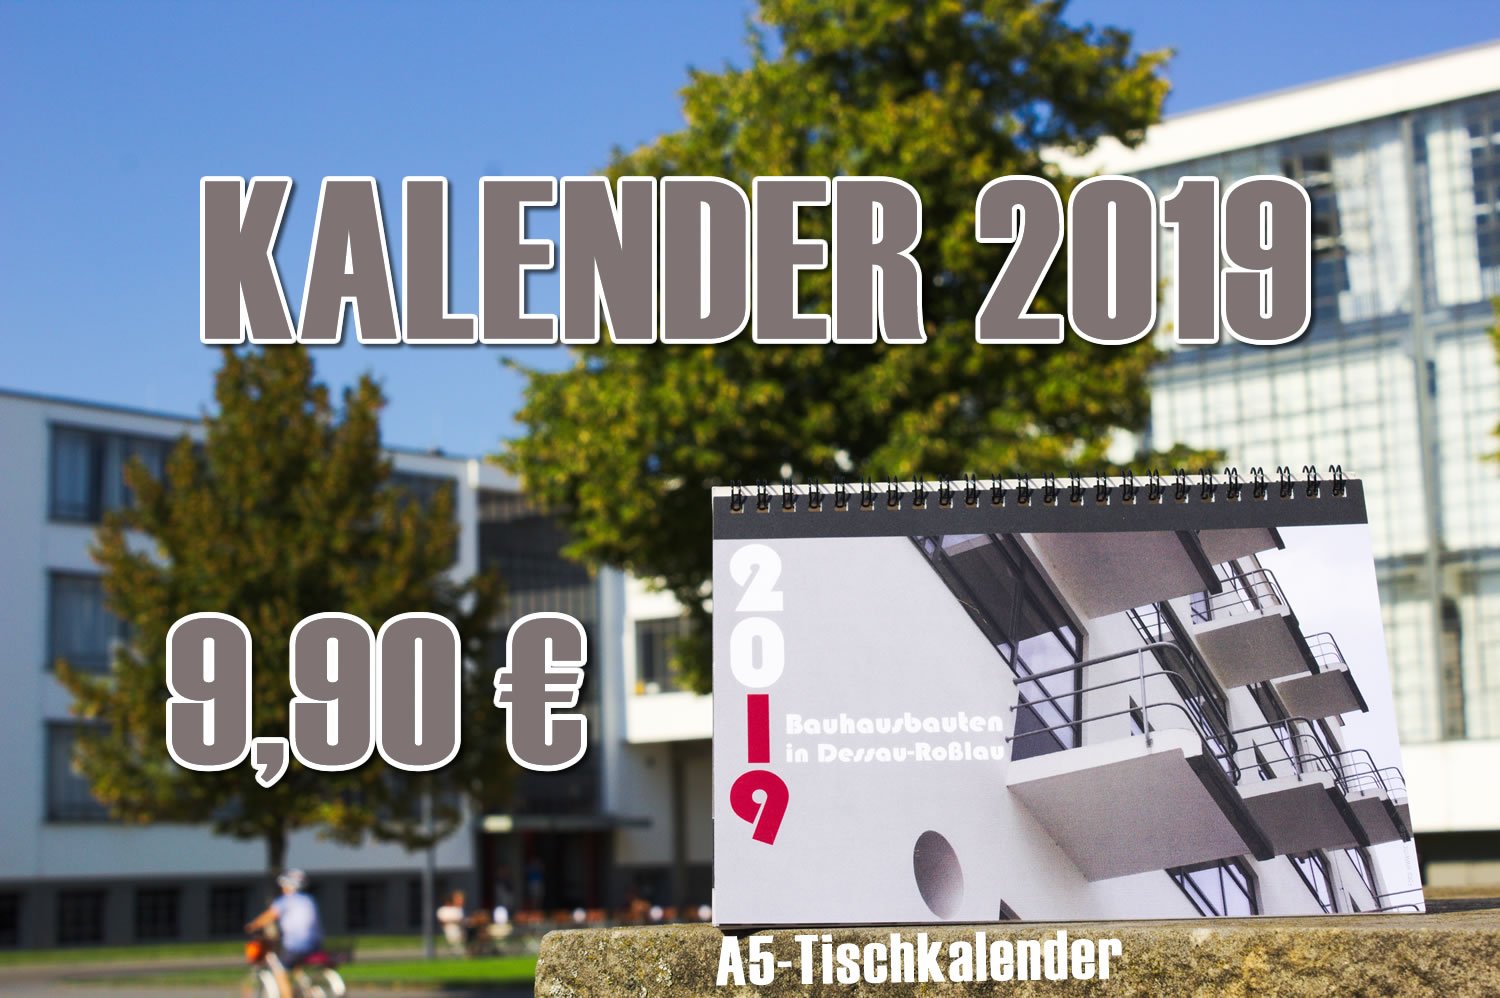 Tischkalender "Bauhausbauten in Dessau-Roßlau" - Mc Add